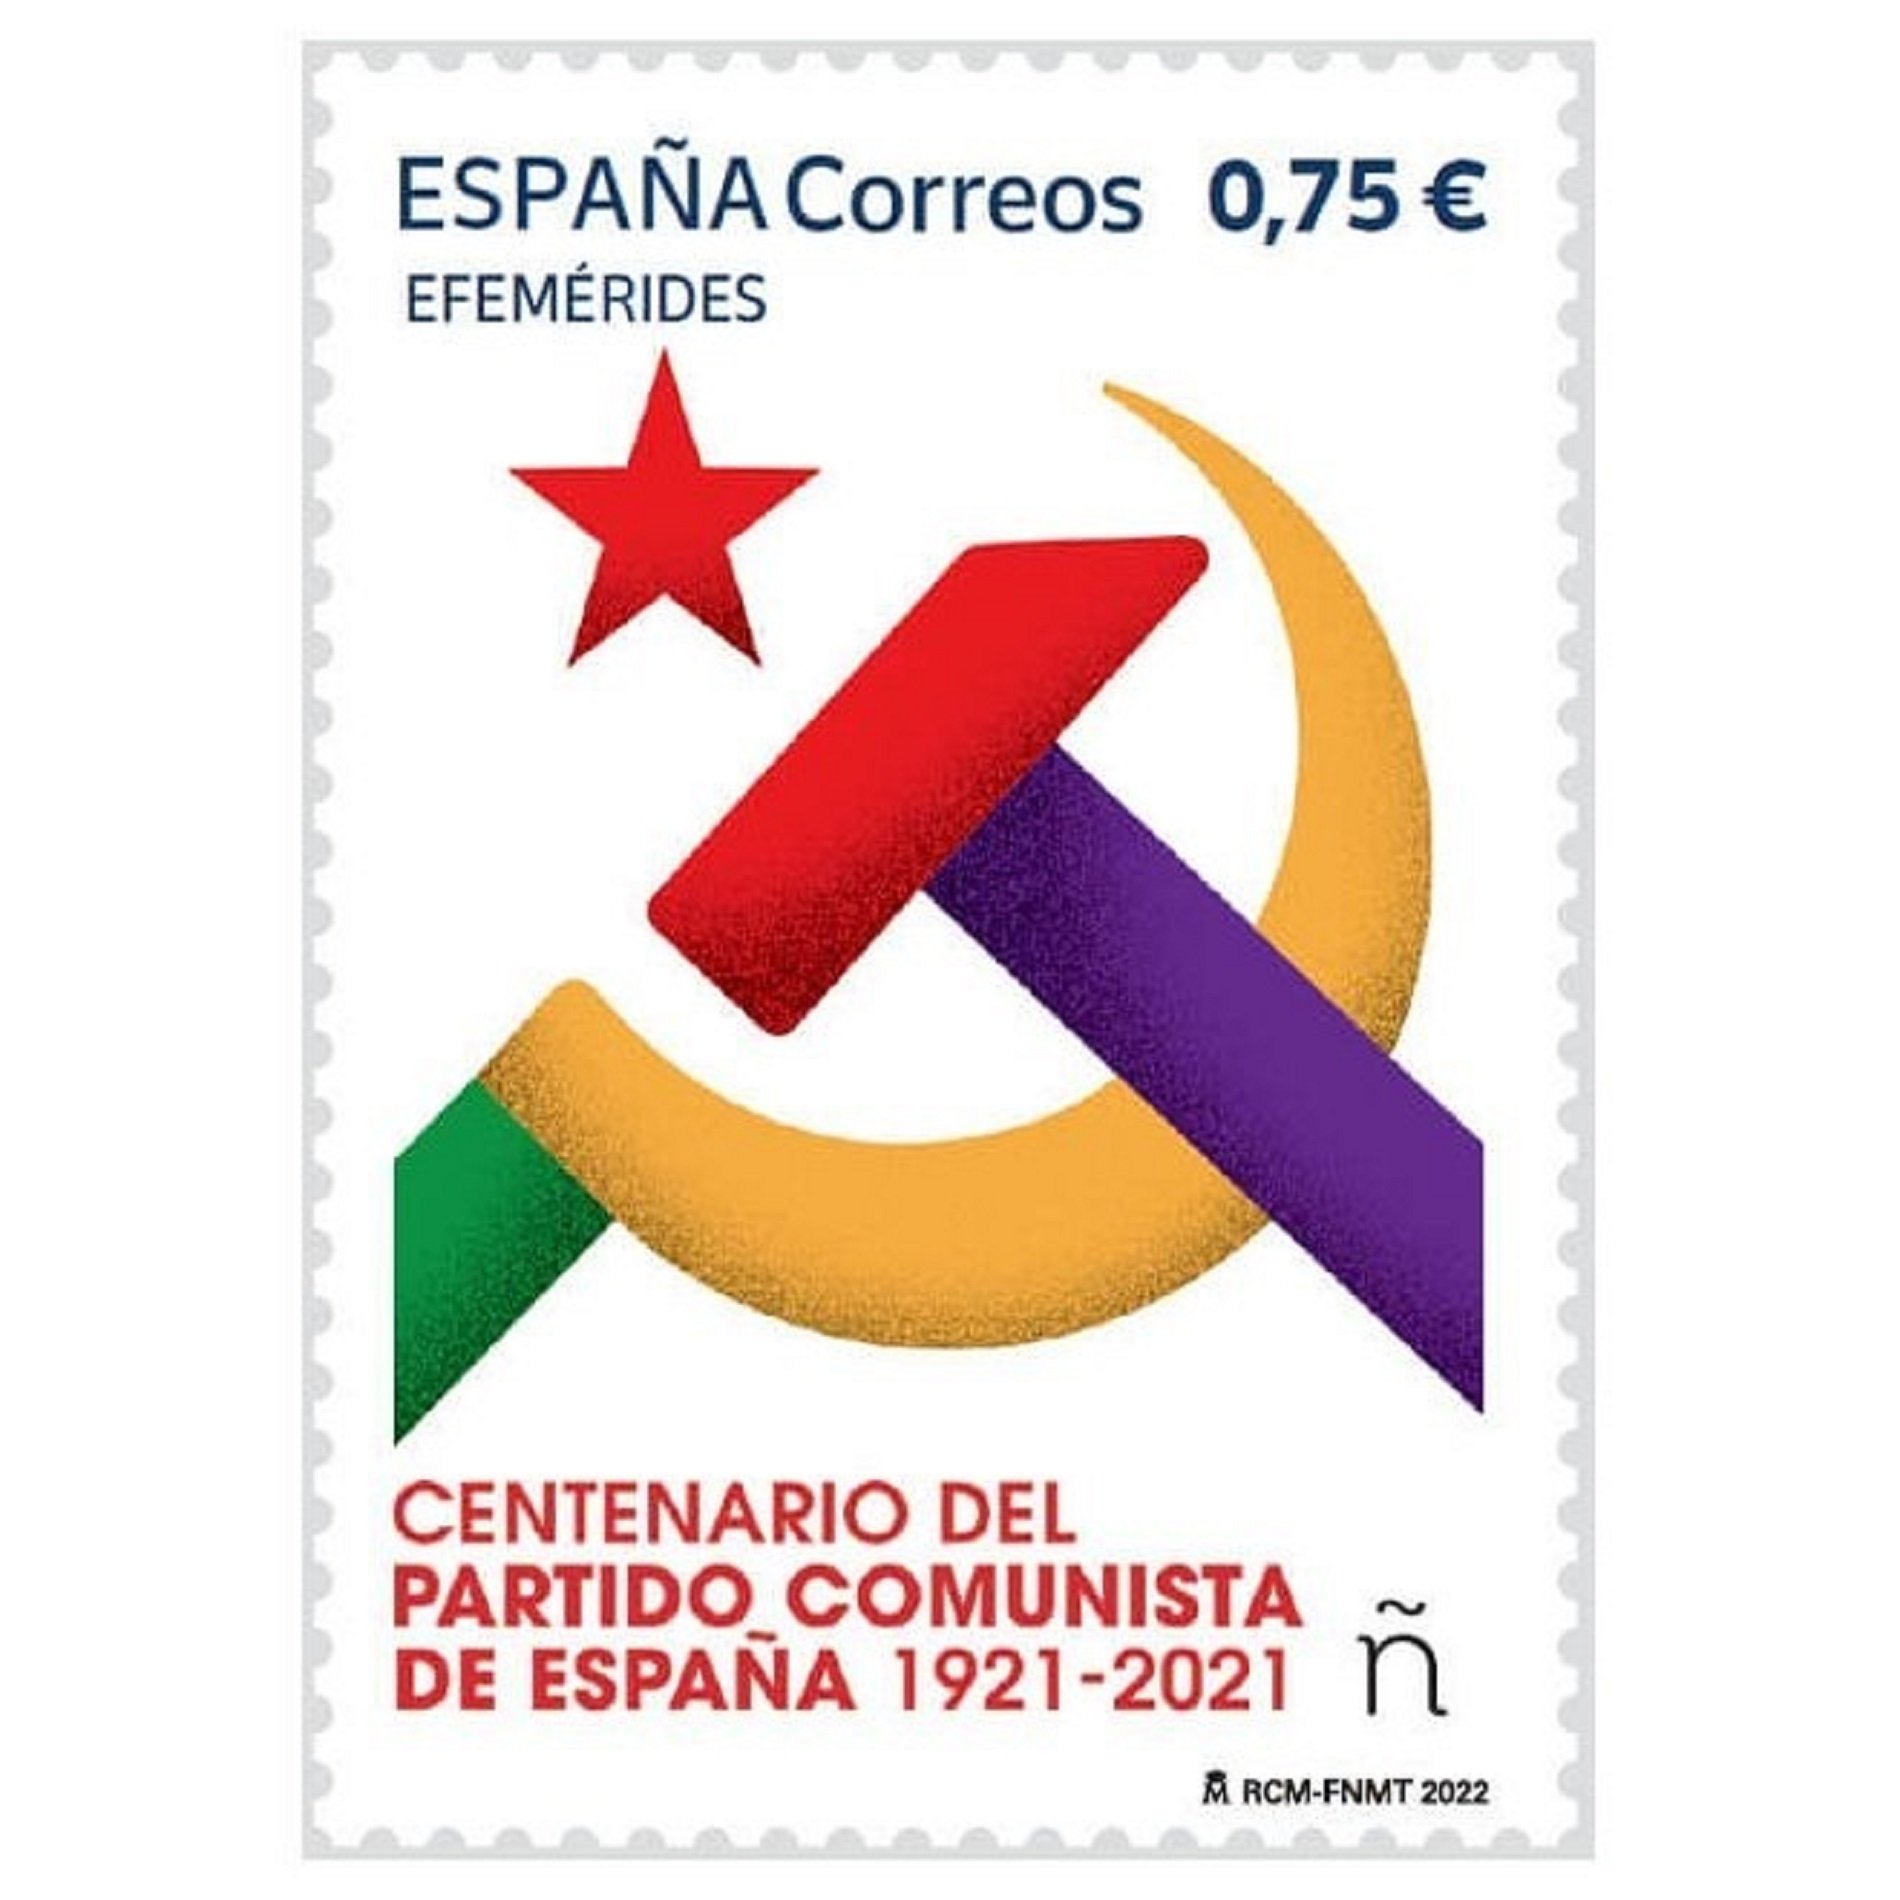 La jutgessa recula i permet l'emissió del segell de Correus que commemora el centenari del PCE